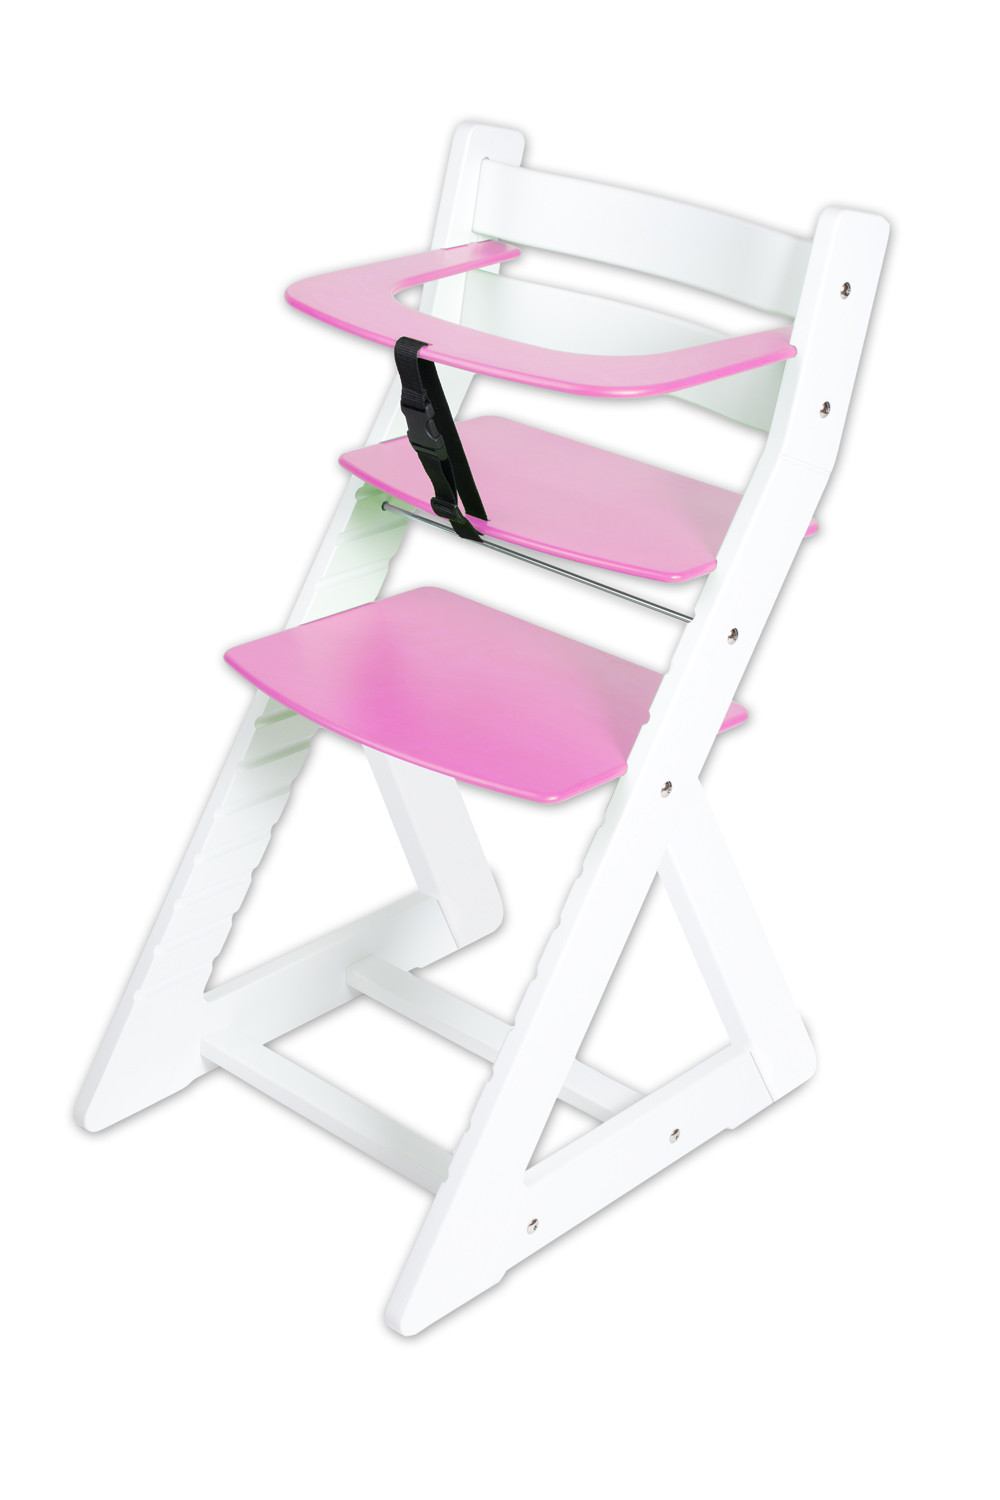 Hajdalánek Rostoucí židle ANETA - malý pultík (bílá, růžová)